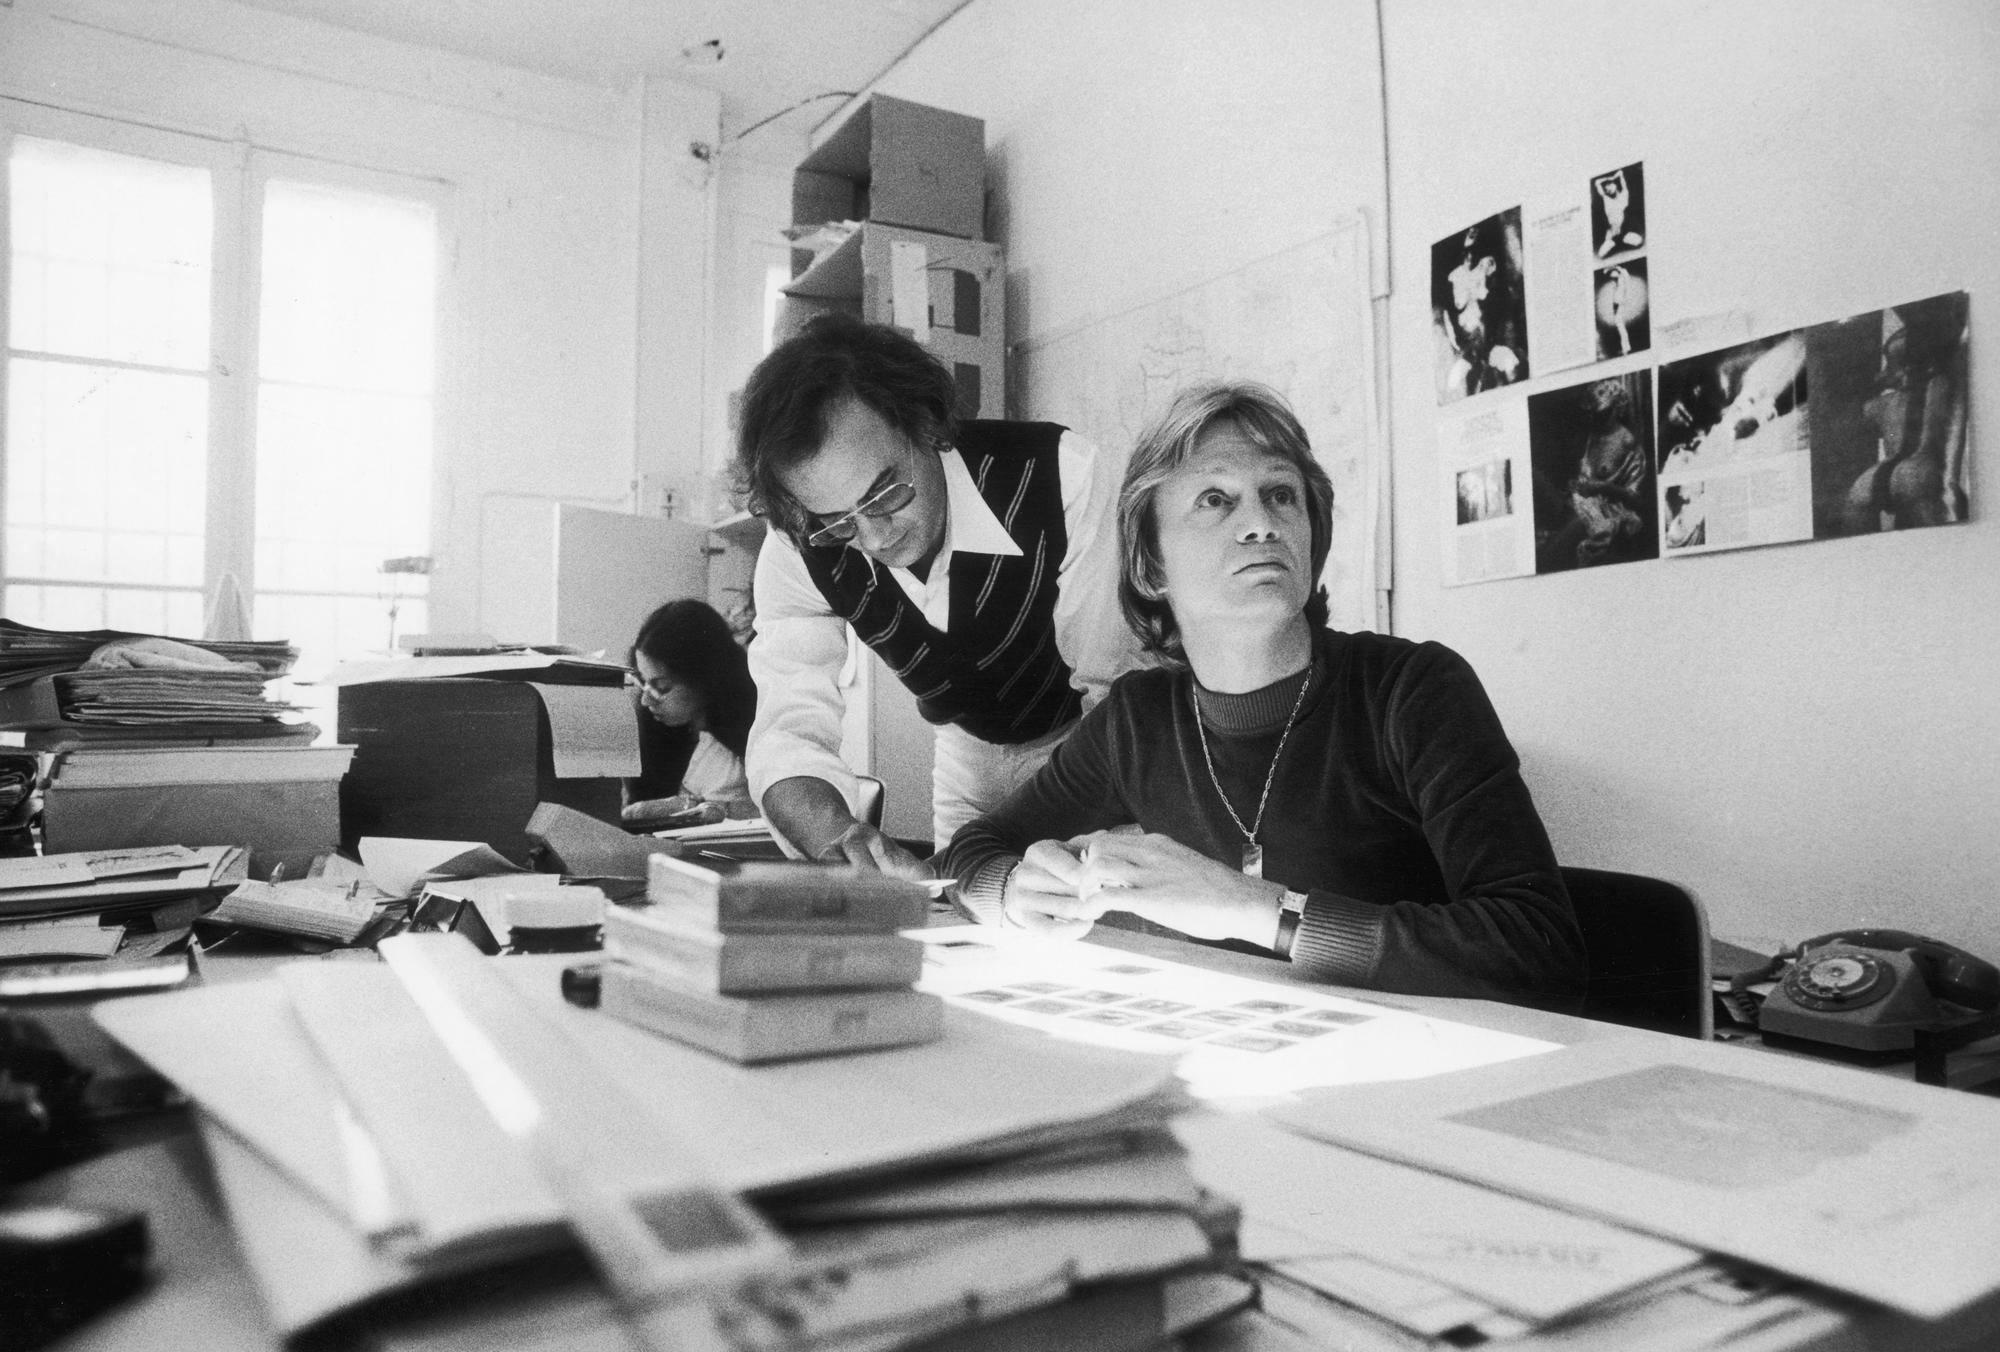 Le chanteur français Claude François dans les bureaux du magazine "Podium", le 21 mai 1974. [AFP - Jean-Pierre Couderc / Roger-Viollet]